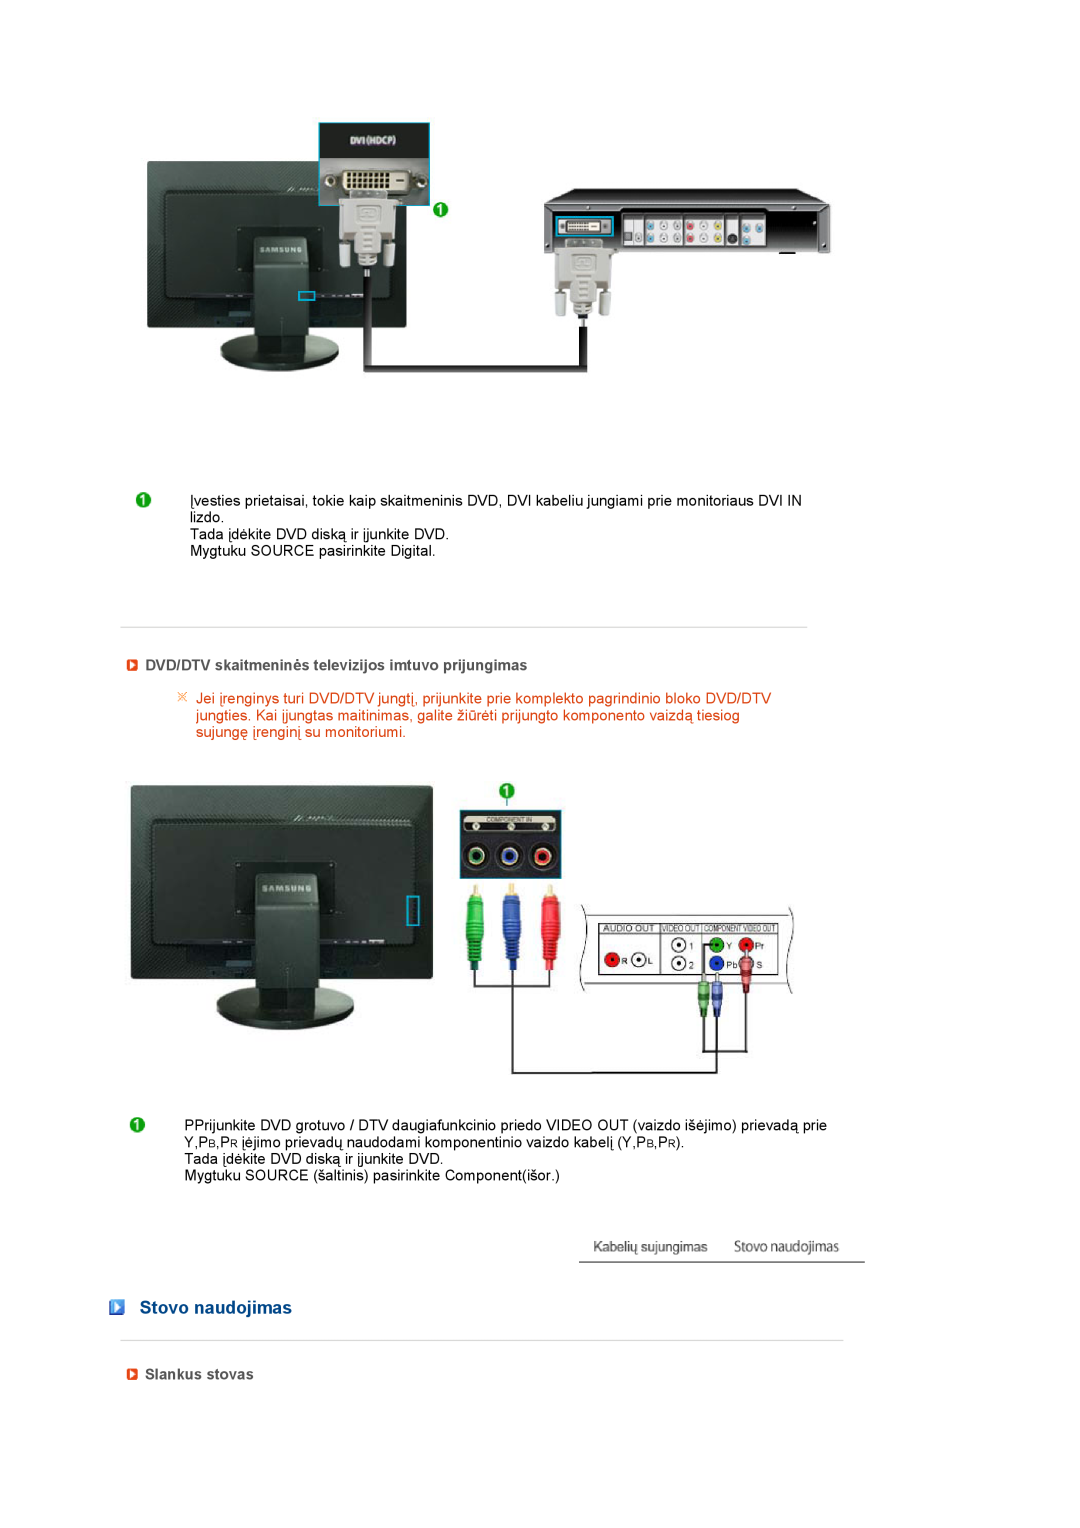 Samsung LS27HUBCB/EDC manual Stovo naudojimas, DVD/DTV skaitmeninės televizijos imtuvo prijungimas, Slankus stovas 